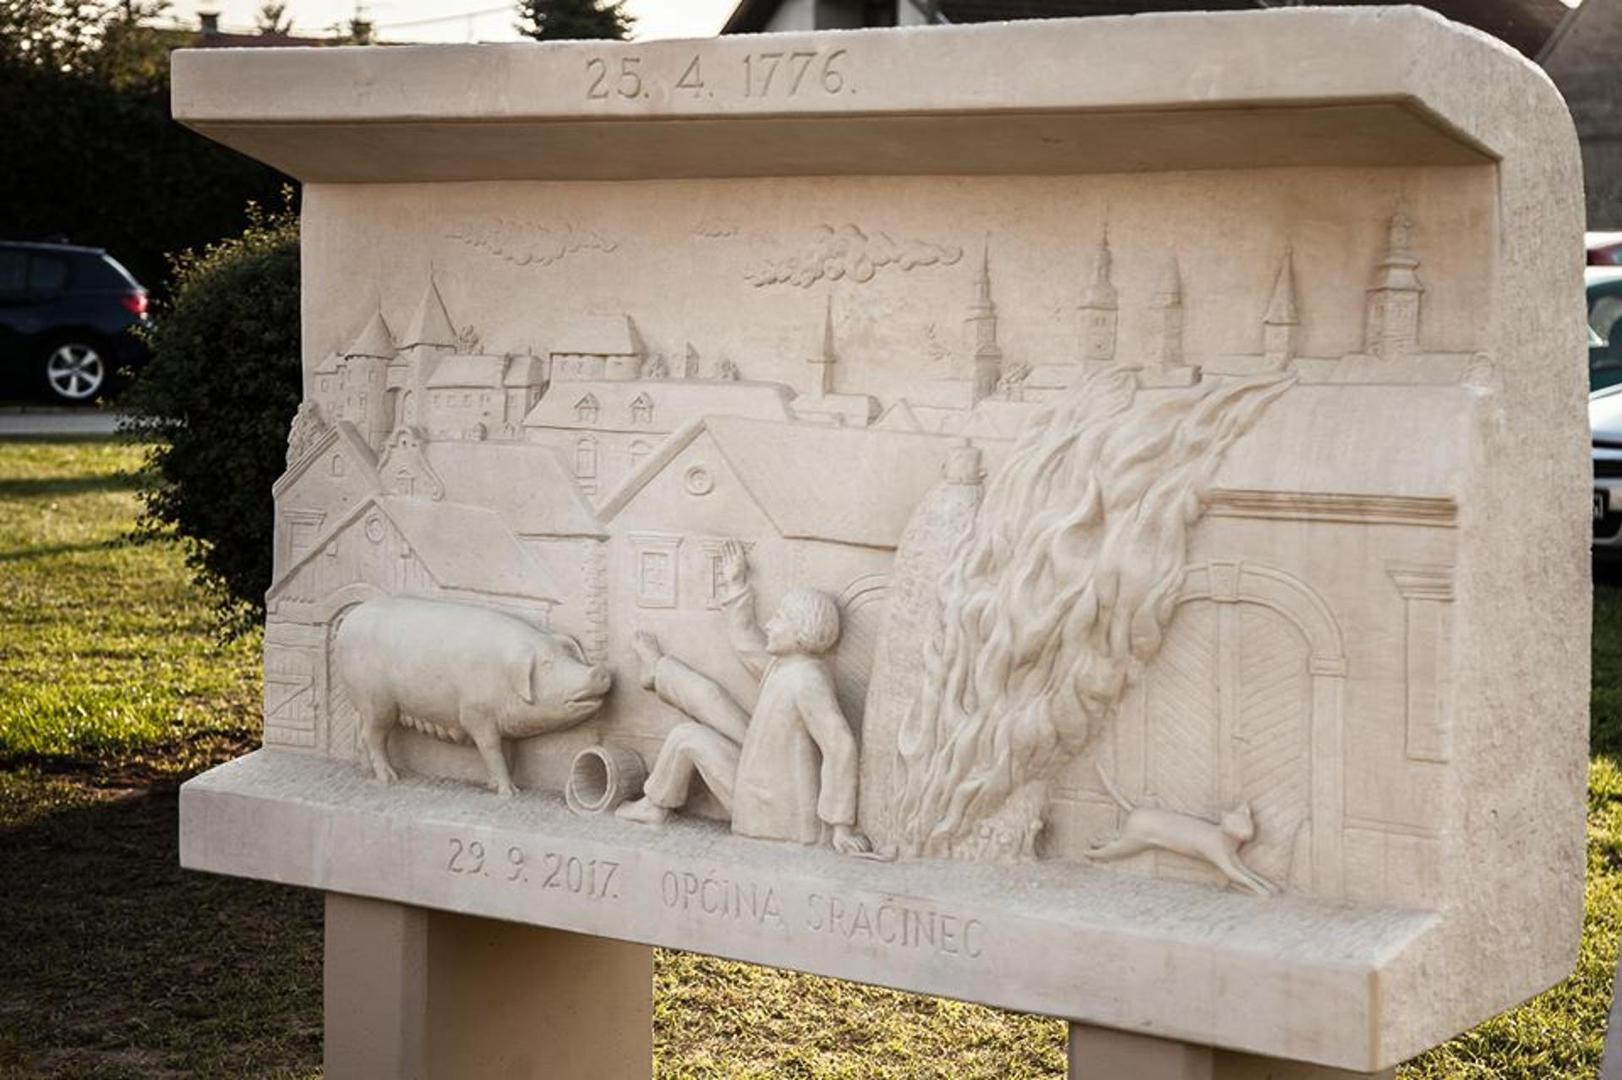 U Sračincu su podigli spomenik događaju koji je promijenio povijest kraja, na kojemu je, uz svinju, uklesan lik Jakoba Verčeka, koji je kažnjen s 24 udarca batinom